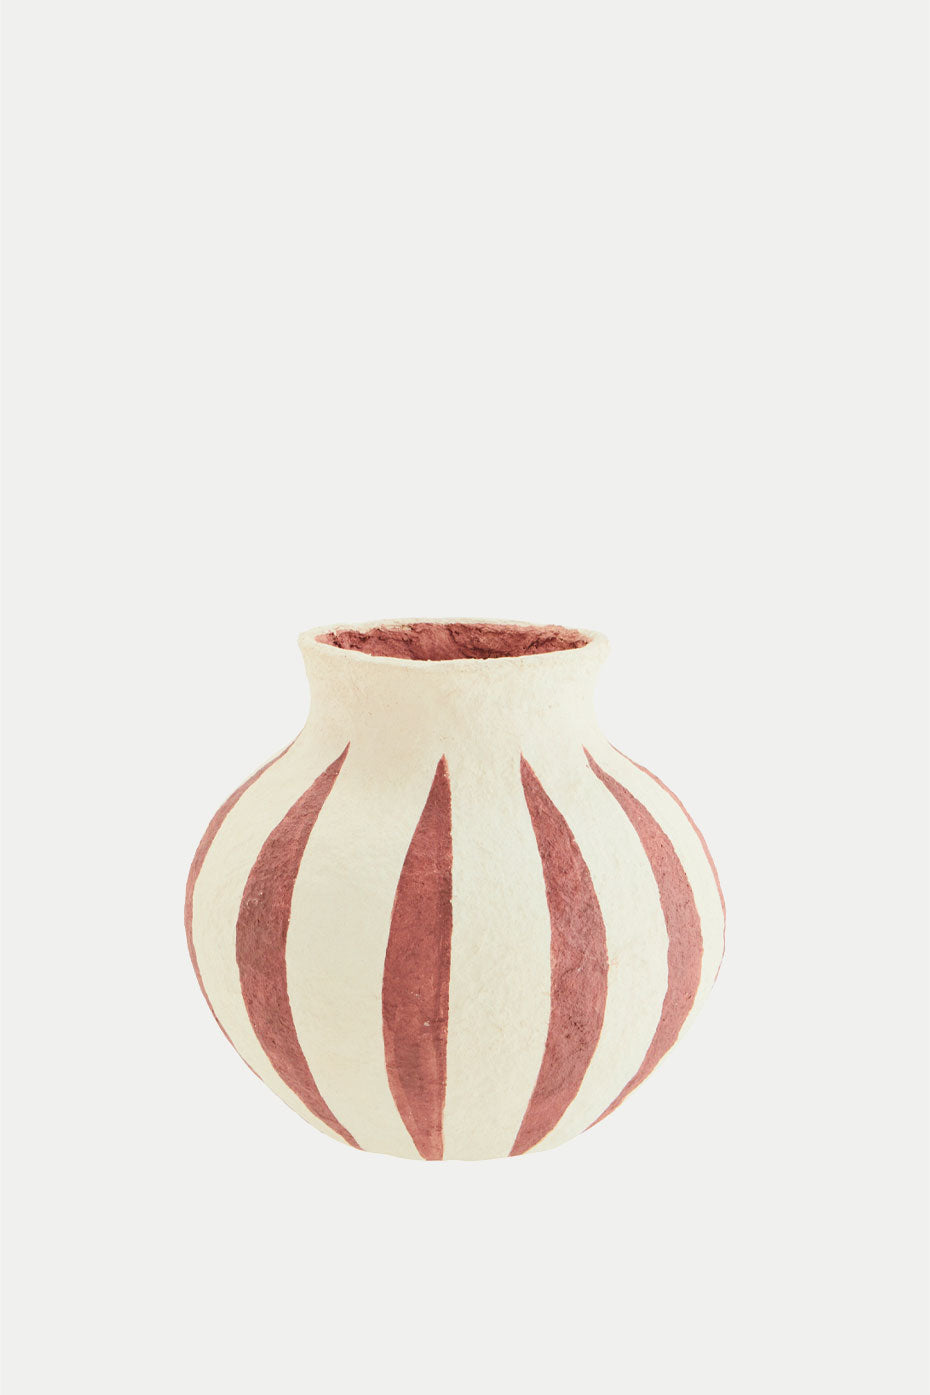 Madam Stoltz Ecru Burnt Red Recycled Paper Mache Vase